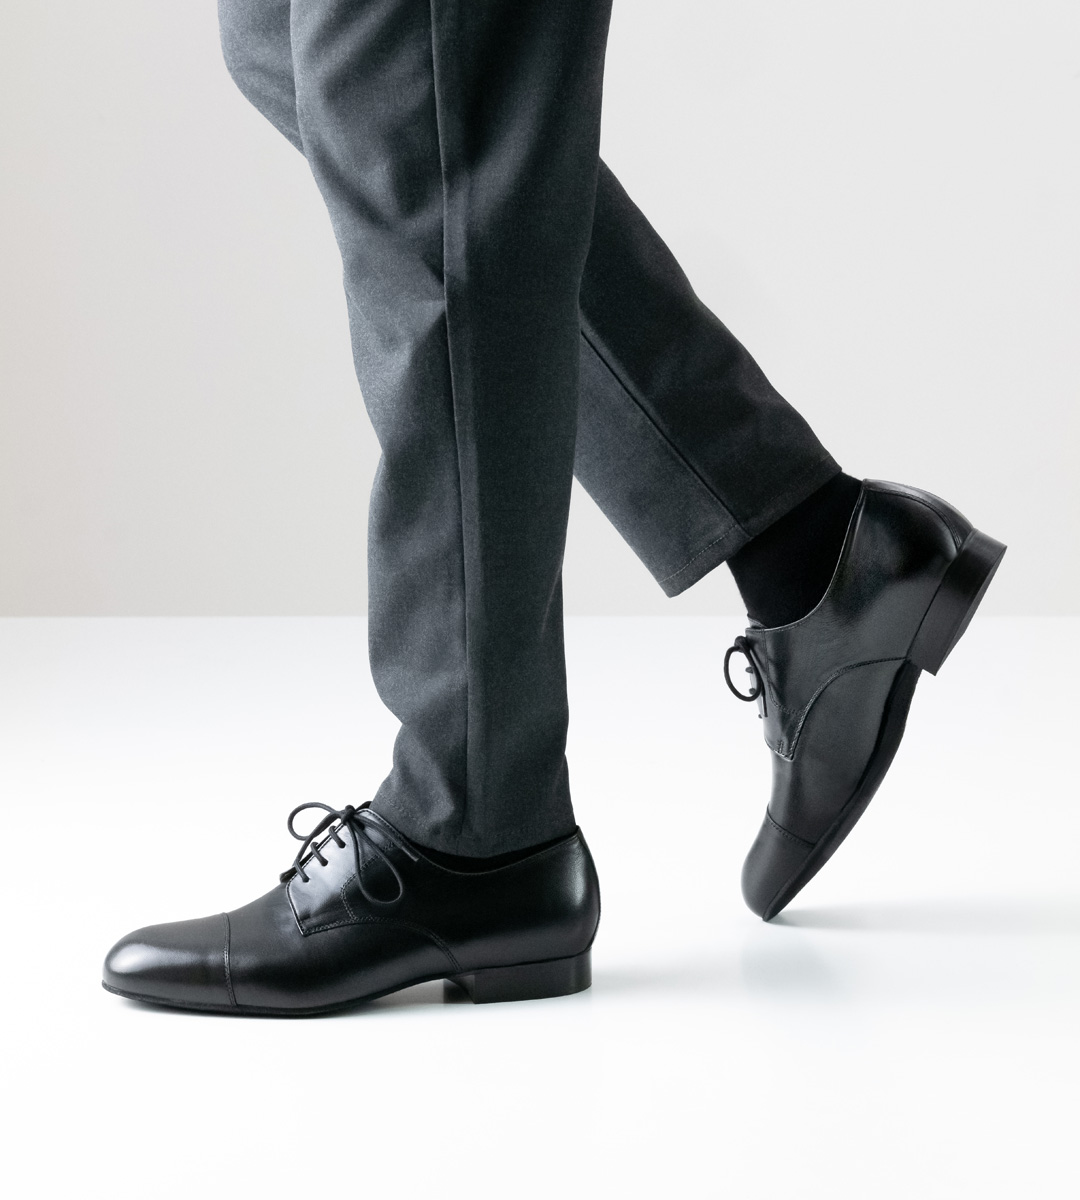 Men's dance shoe by Werner Kern in black for wide feet